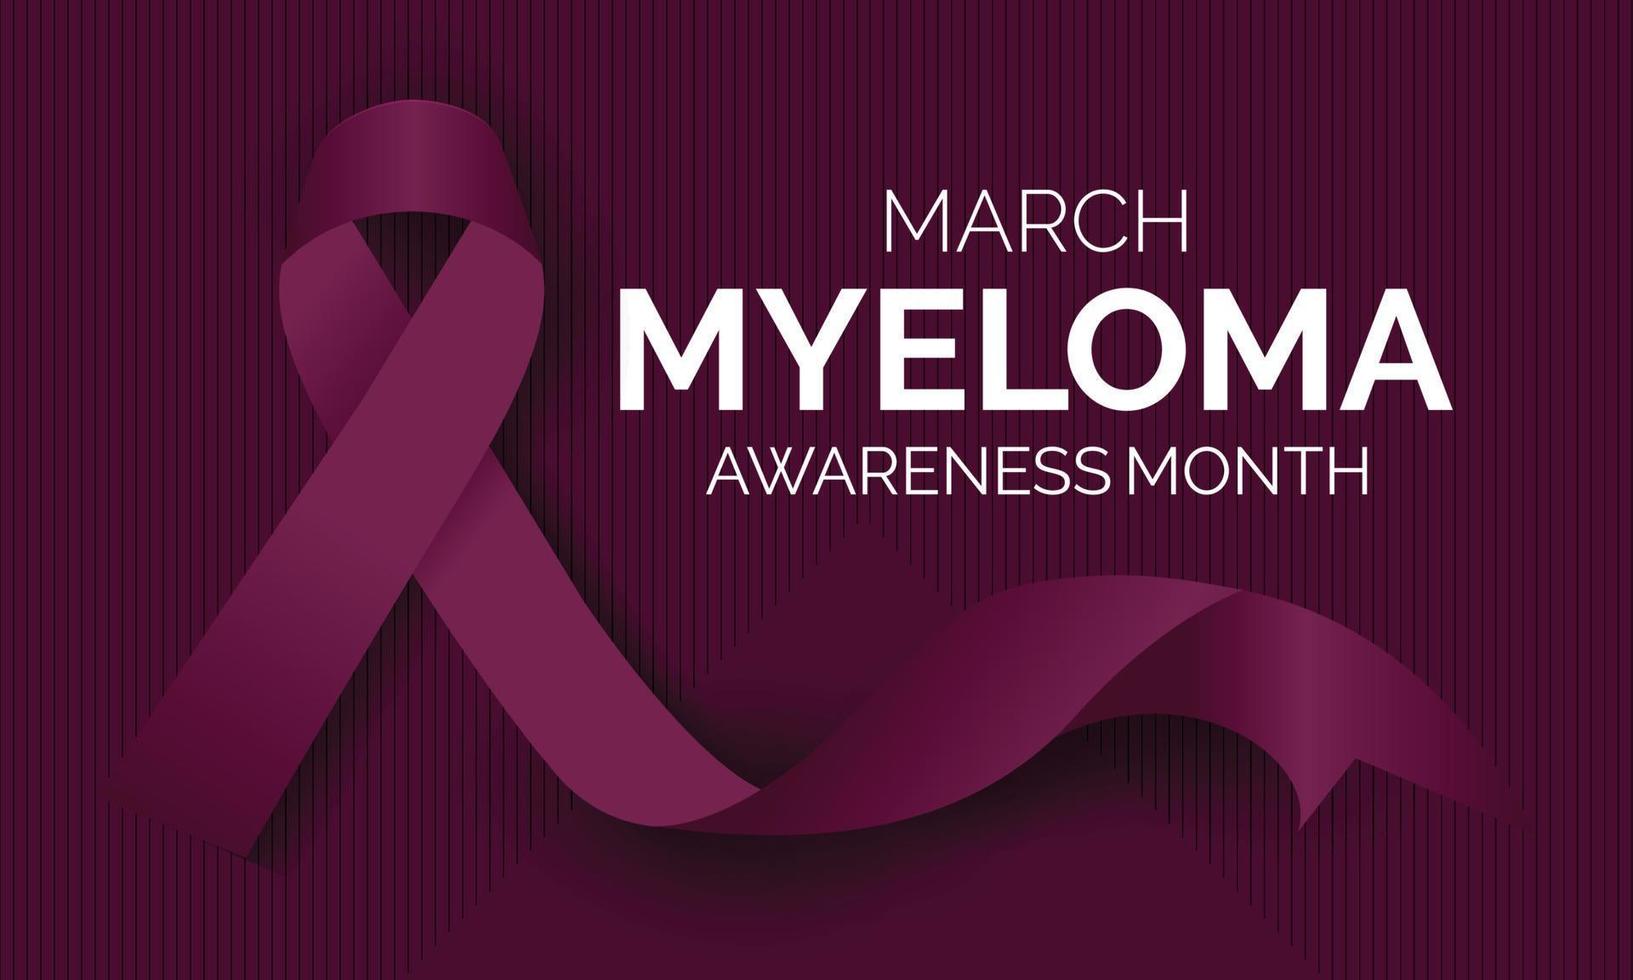 myeloom bewustzijn gevierd in maart jaarlijks. poster , banier en realistisch lintje. vector illustratie.